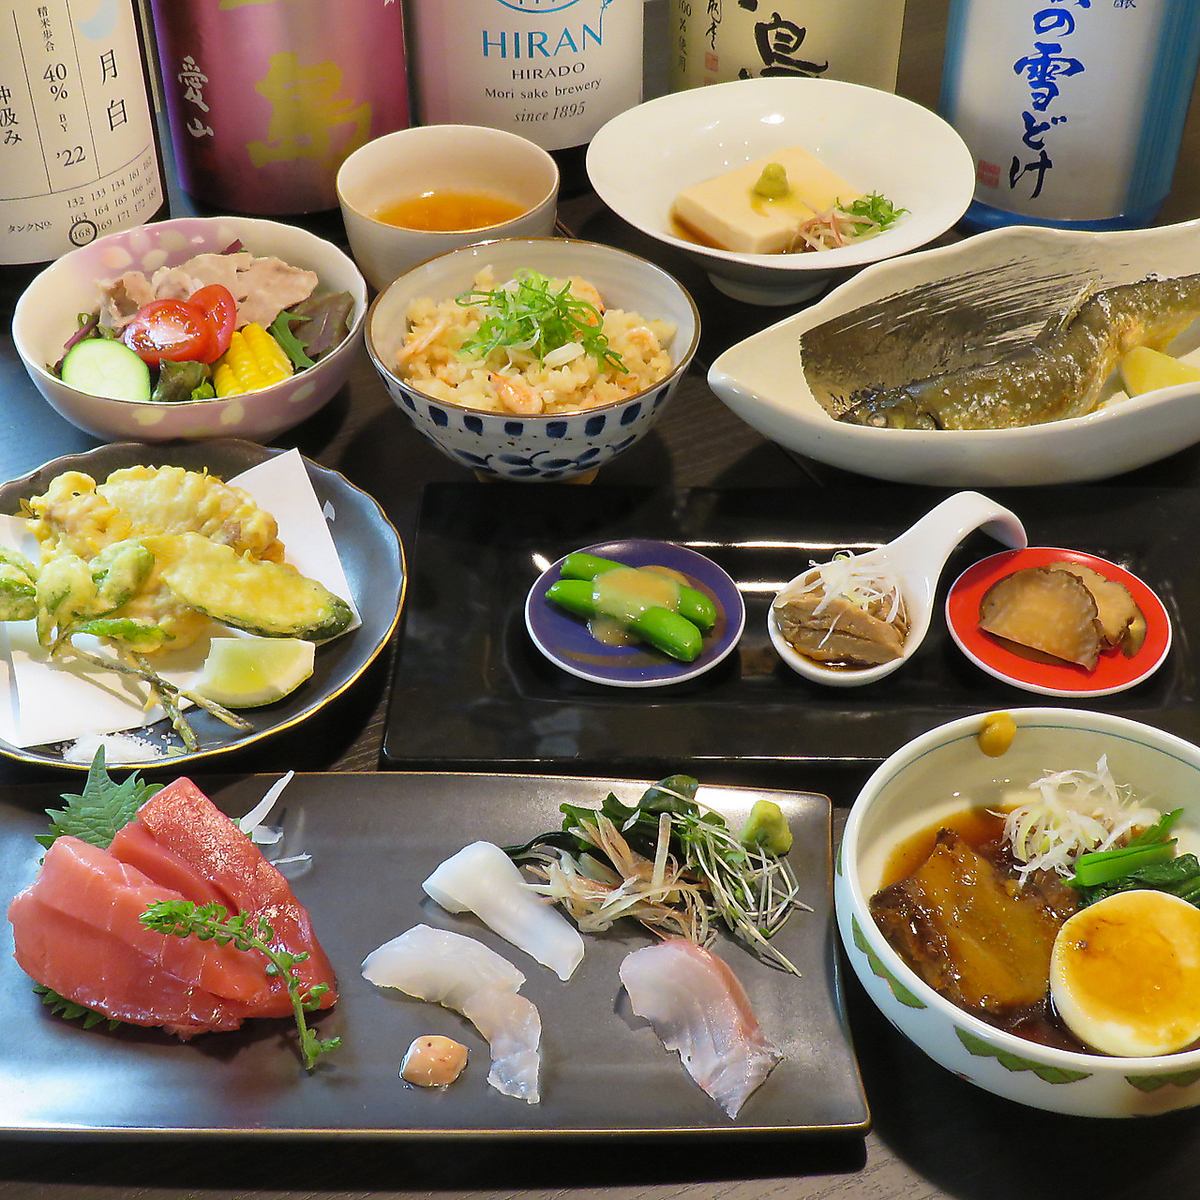 こだわり料理と稀有な日本酒でグルメな方でもご満足いただけます